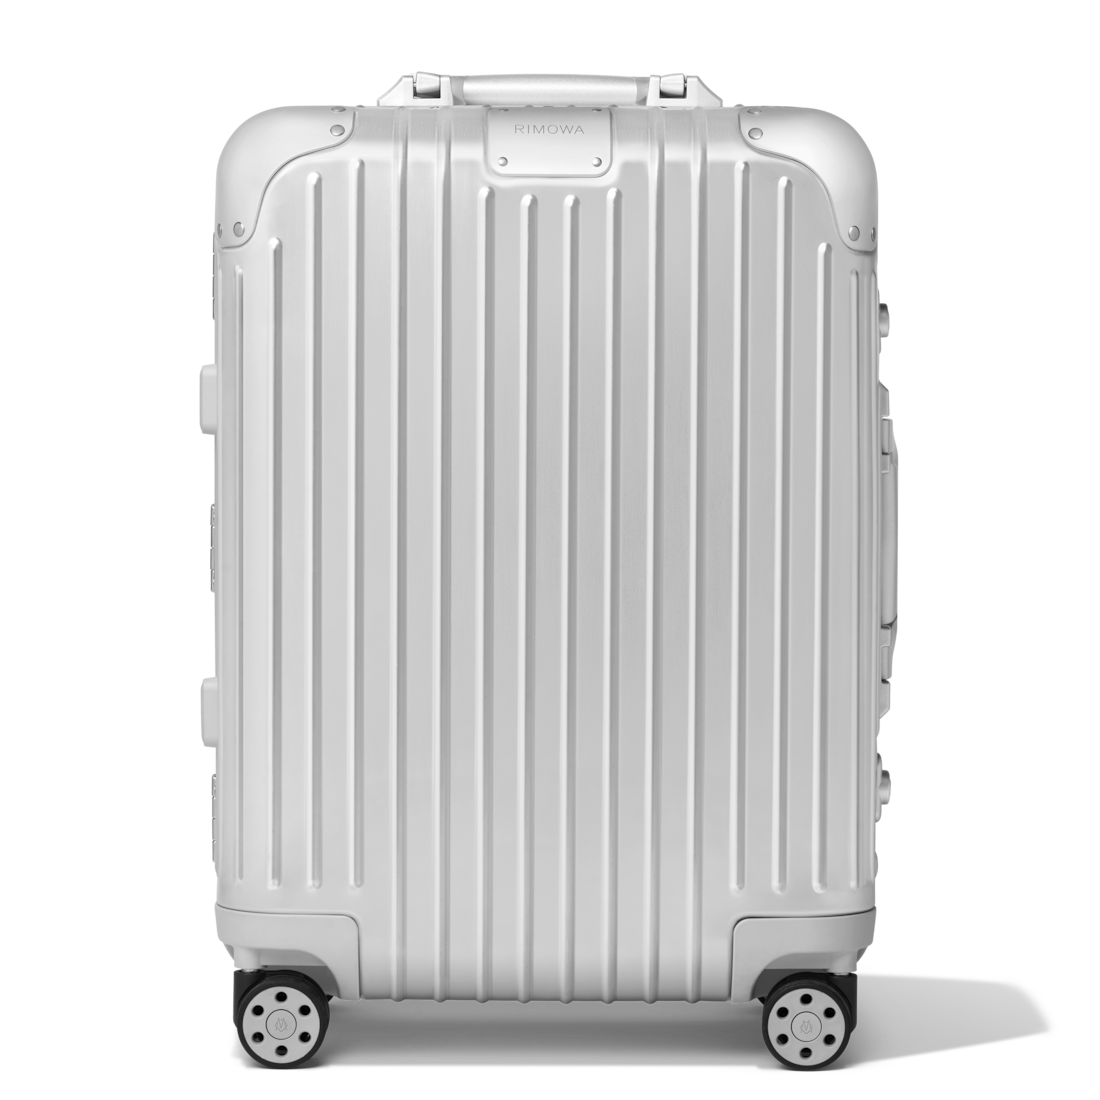 rimowa suitcase sale - 59% OFF 